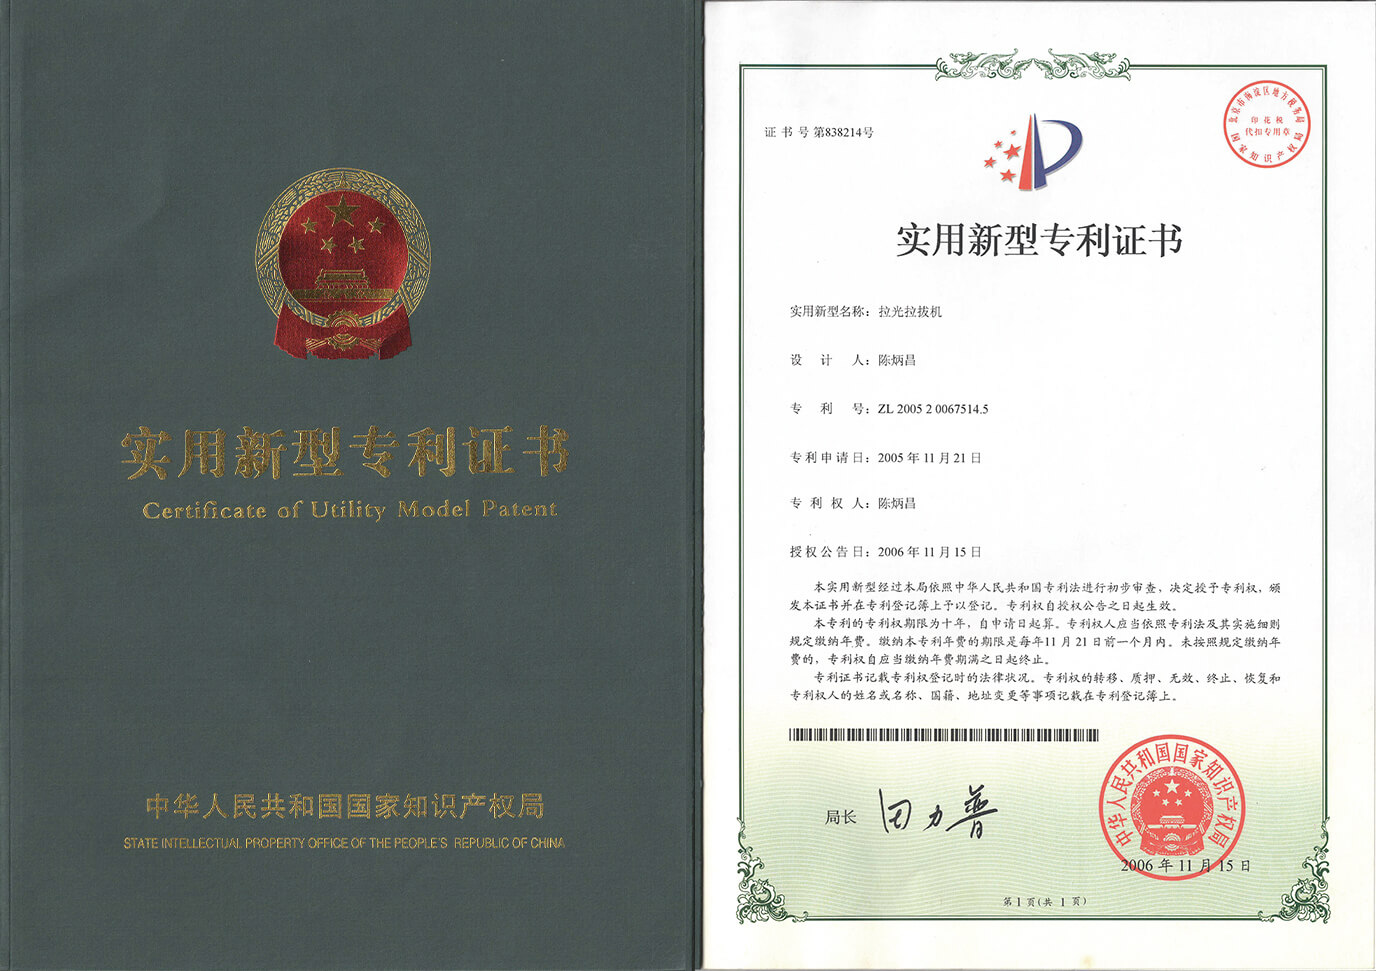 El certificado de patente de modelo de utilidad de la máquina de dibujo ligero